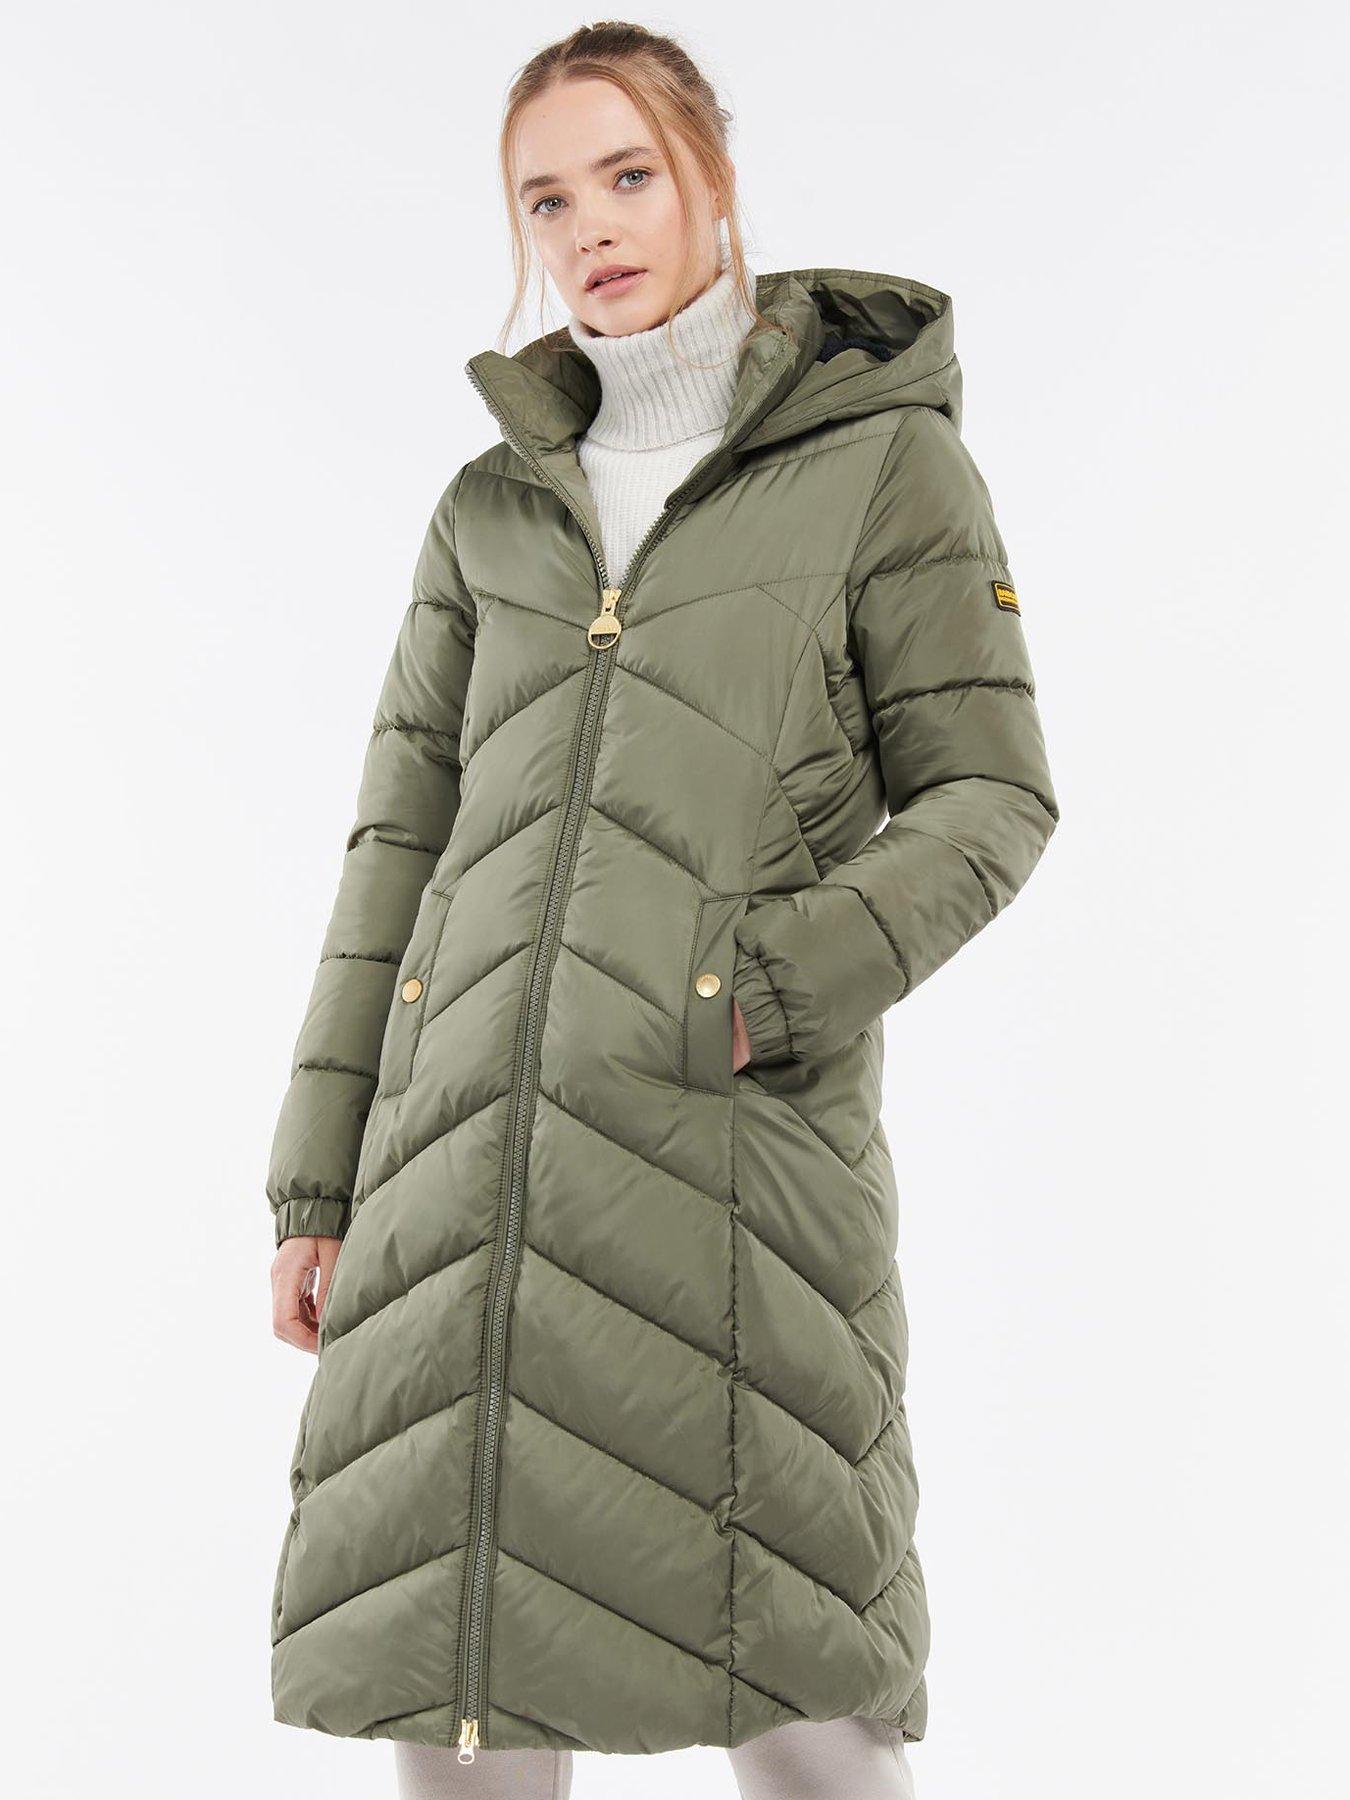 Coats & Jackets Athena Quilted Coat - Khaki